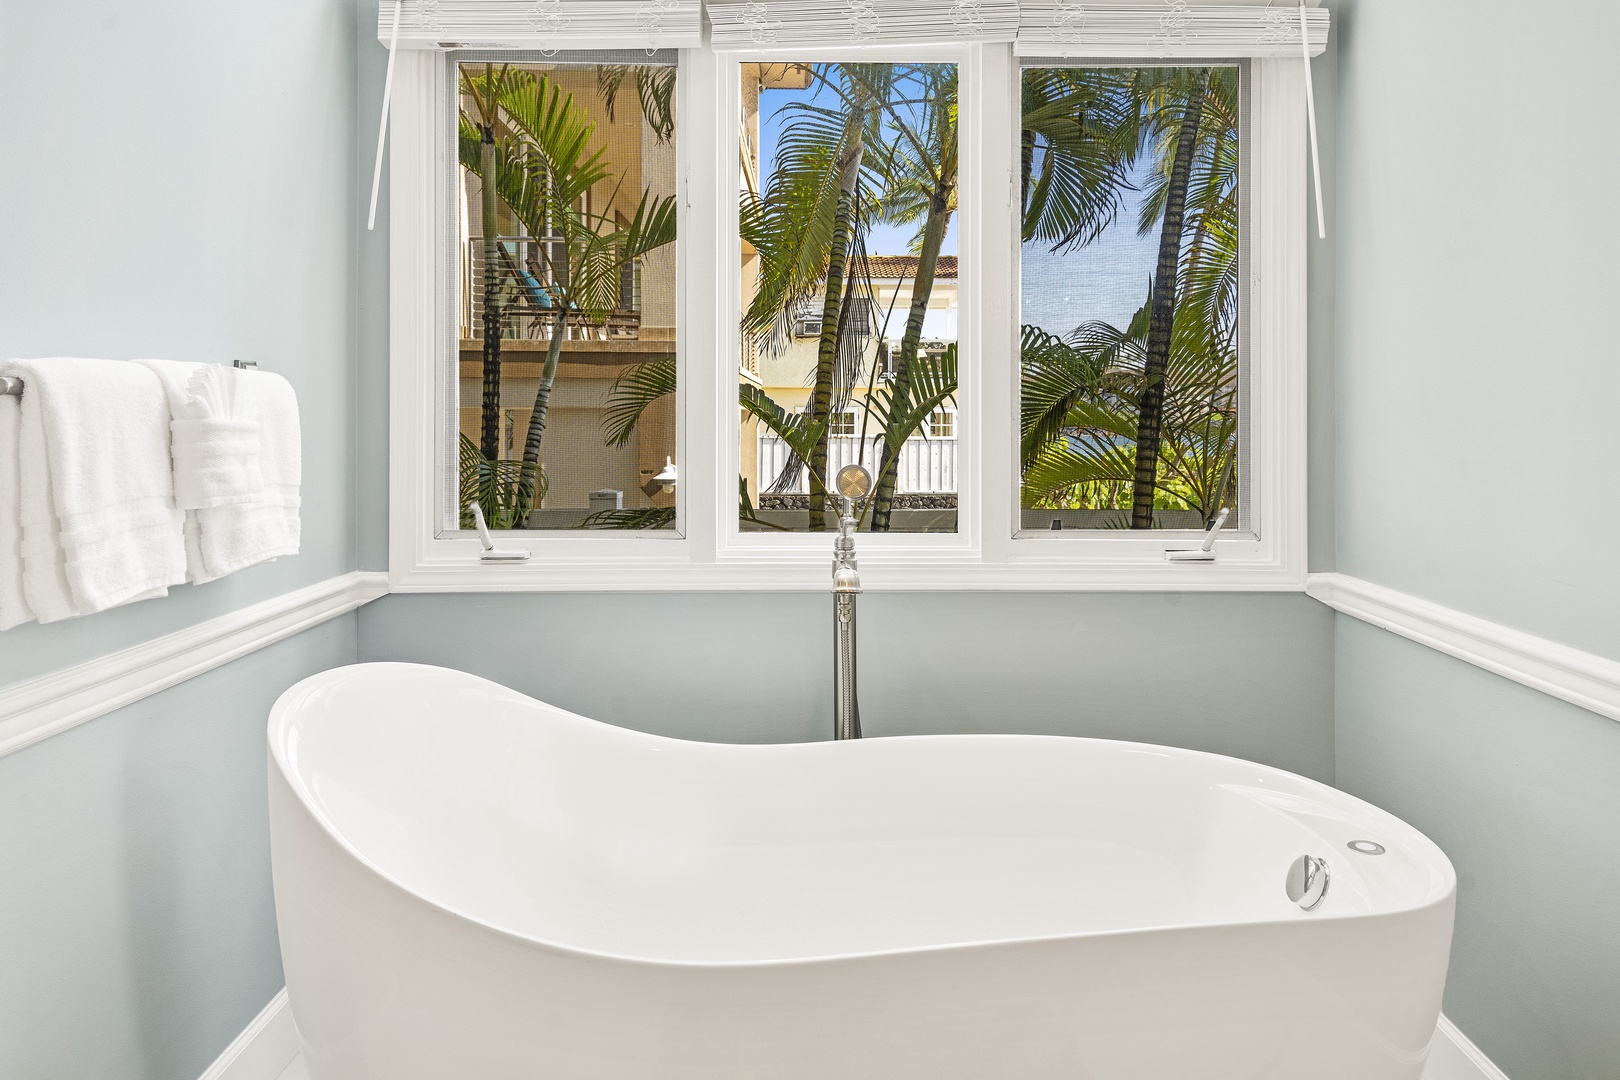 Kailua Kona Vacation Rentals, Dolphin Manor - Primary bathroom soaking tub!